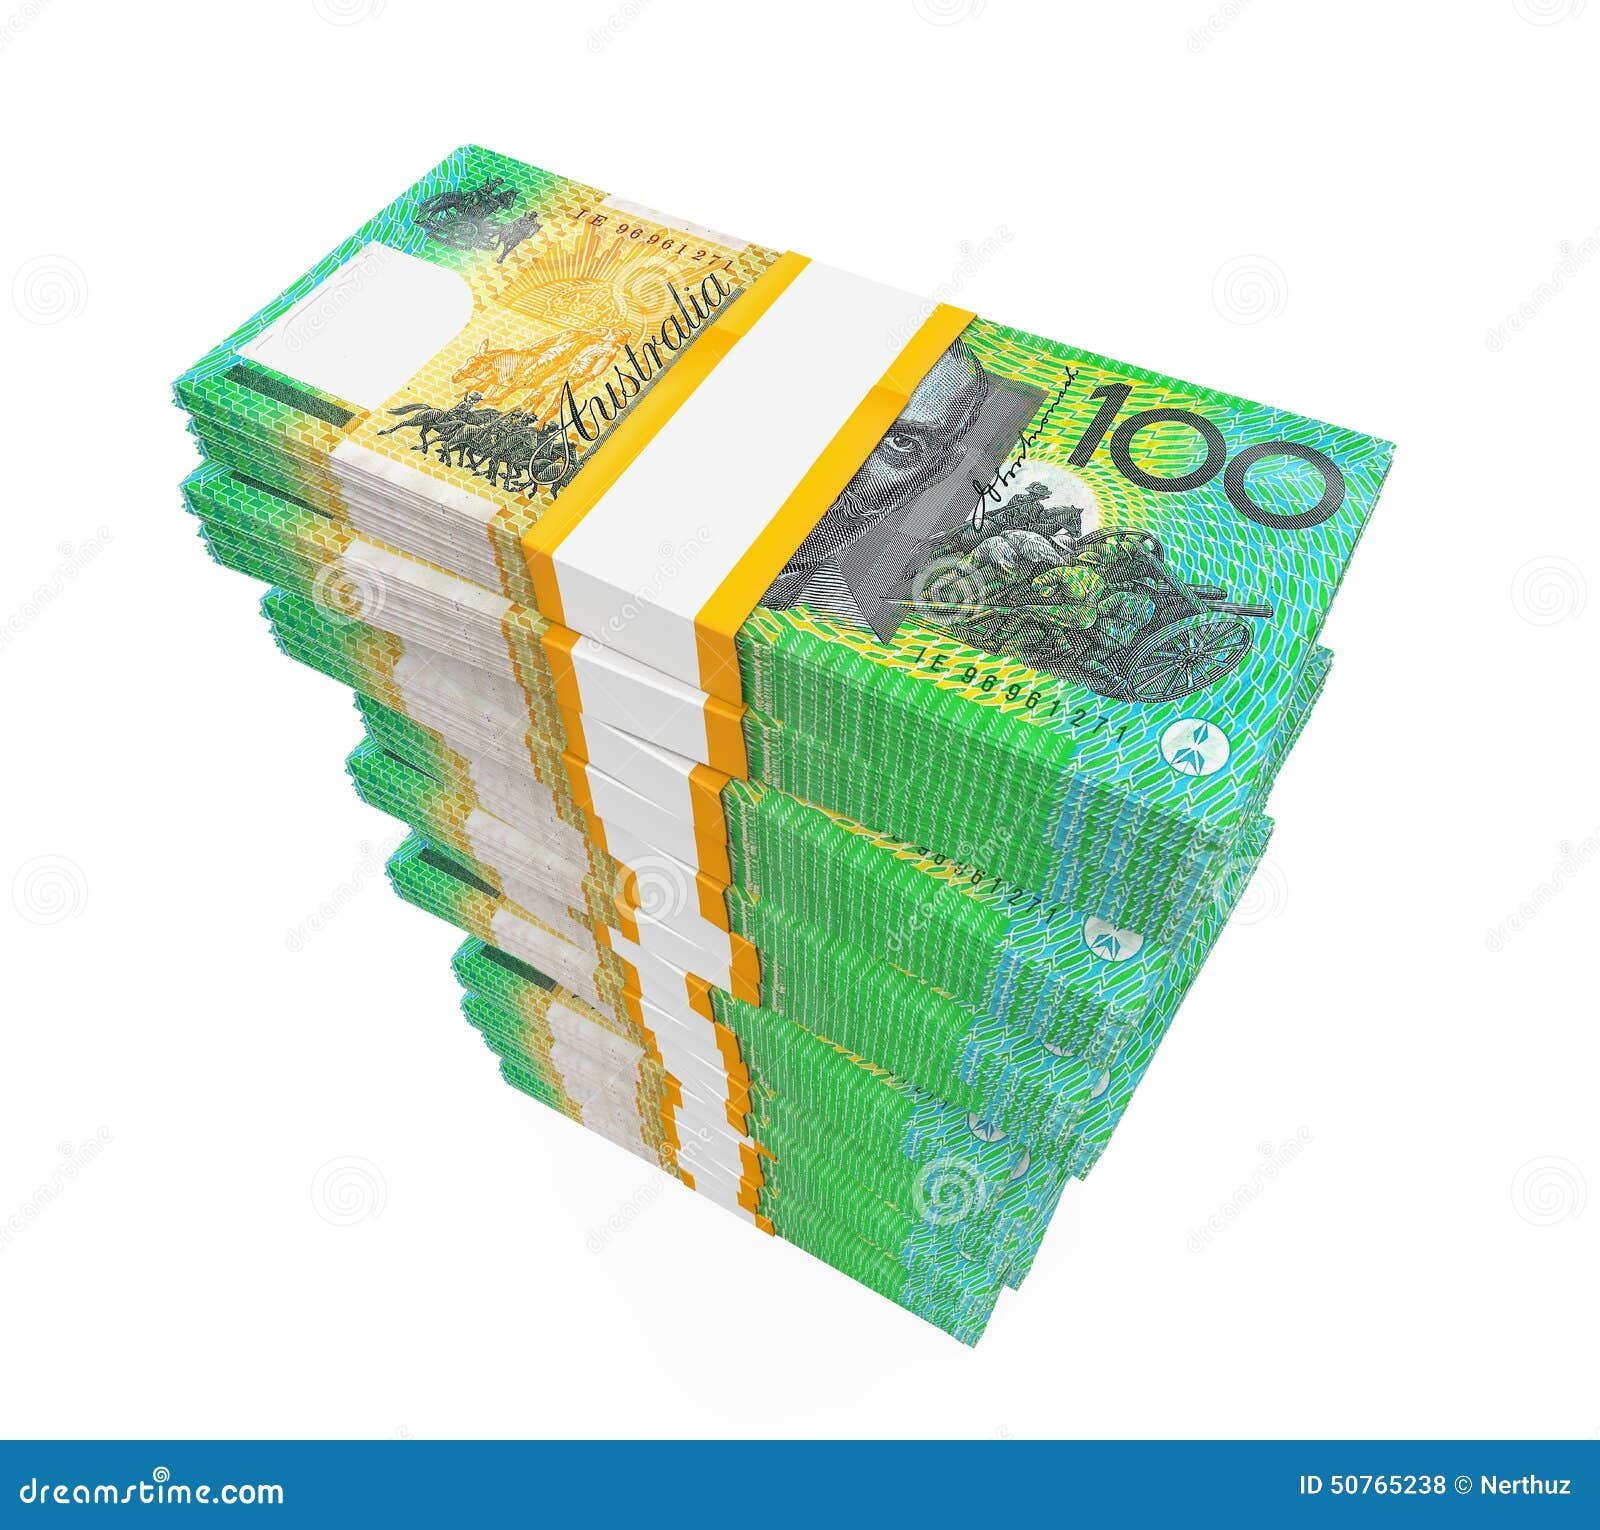 Brobrygge varemærke egetræ Stacks of 100 Australian Dollar Banknotes Stock Illustration - Illustration  of paper, economics: 50765238